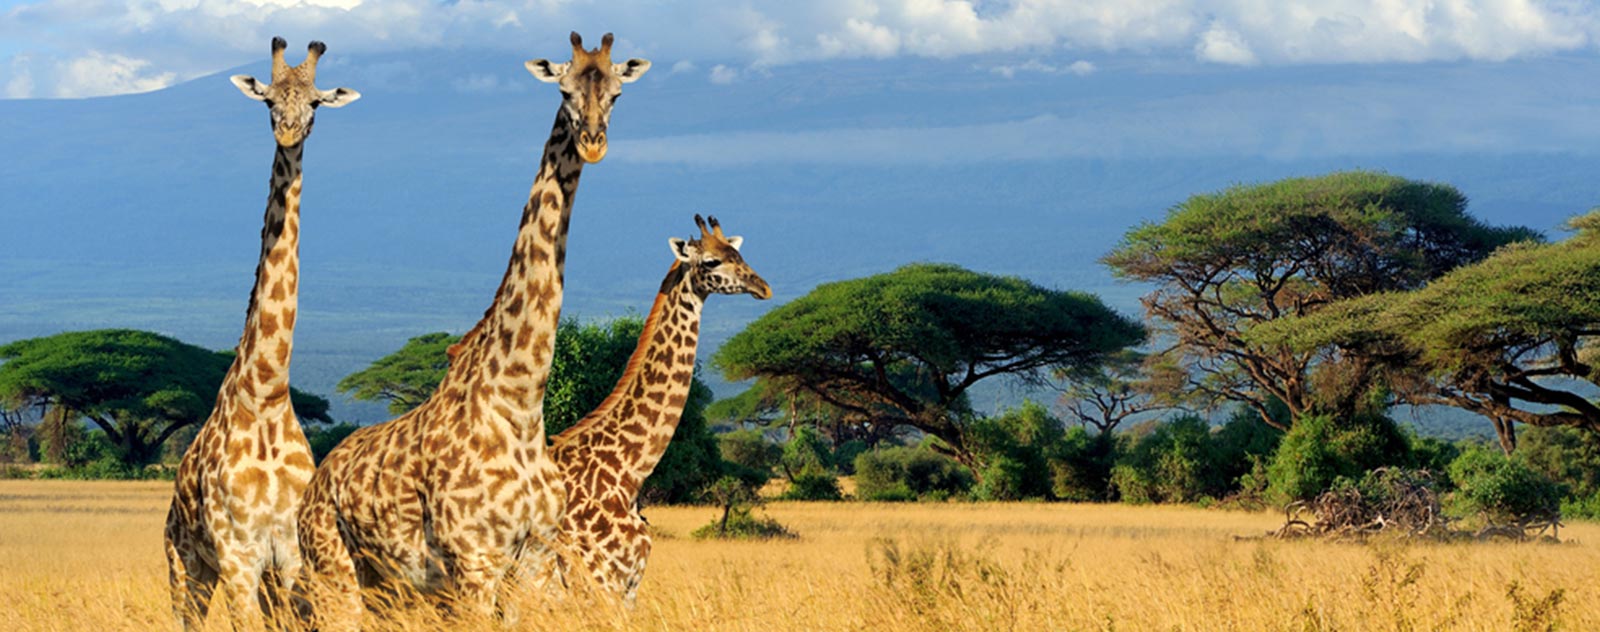 giraffe-in-savanna-africa